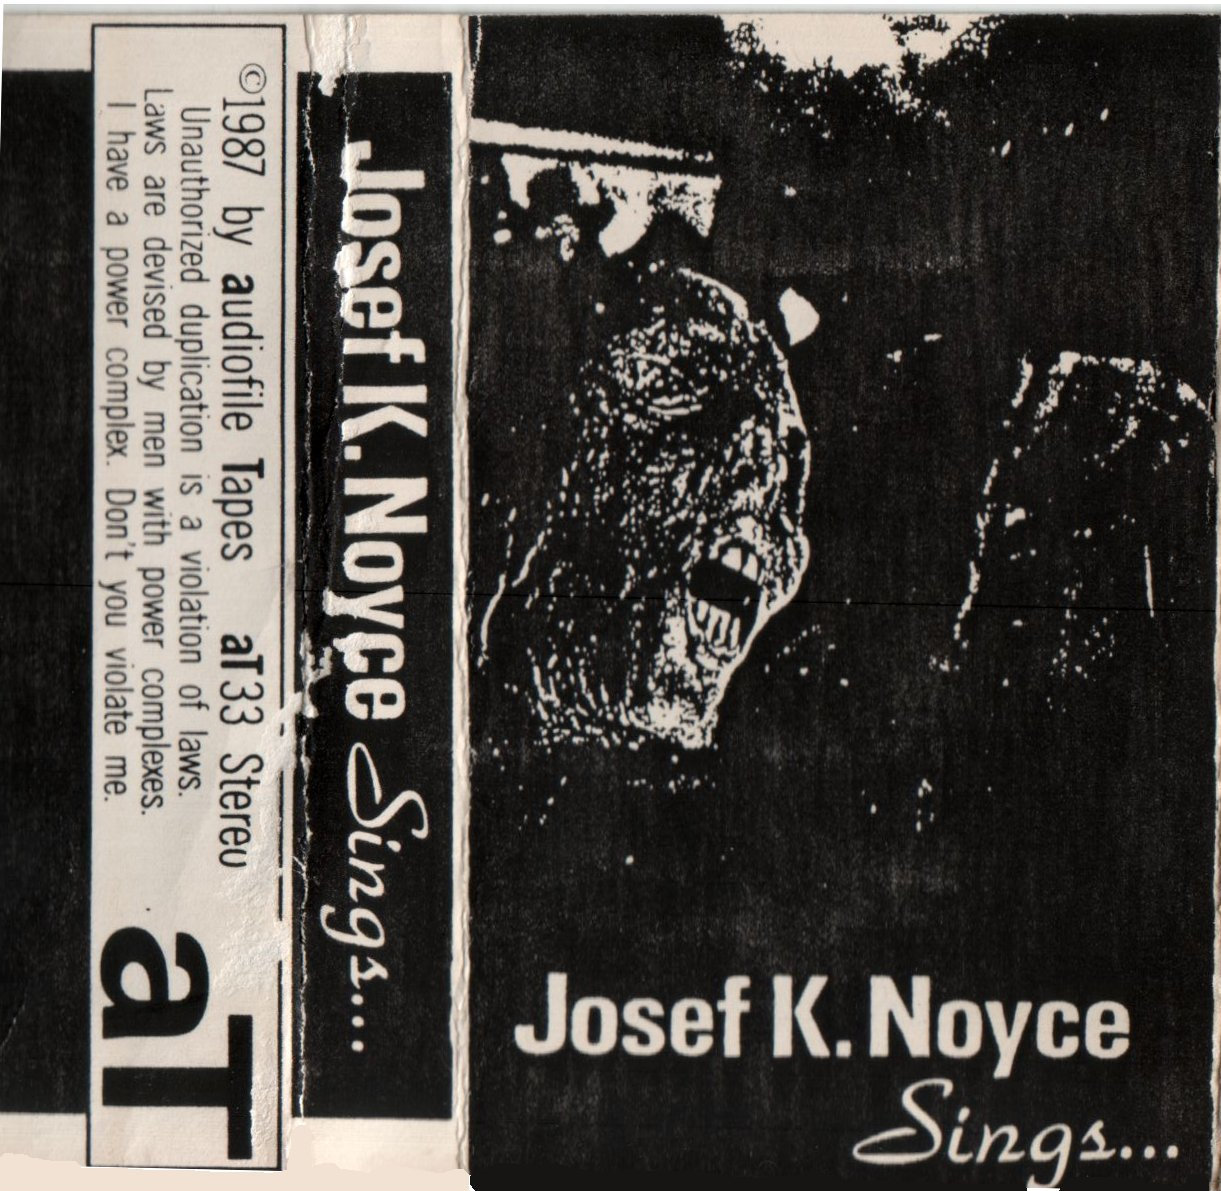 Tape: "Josef K. Noyce Sings, ..." - aT